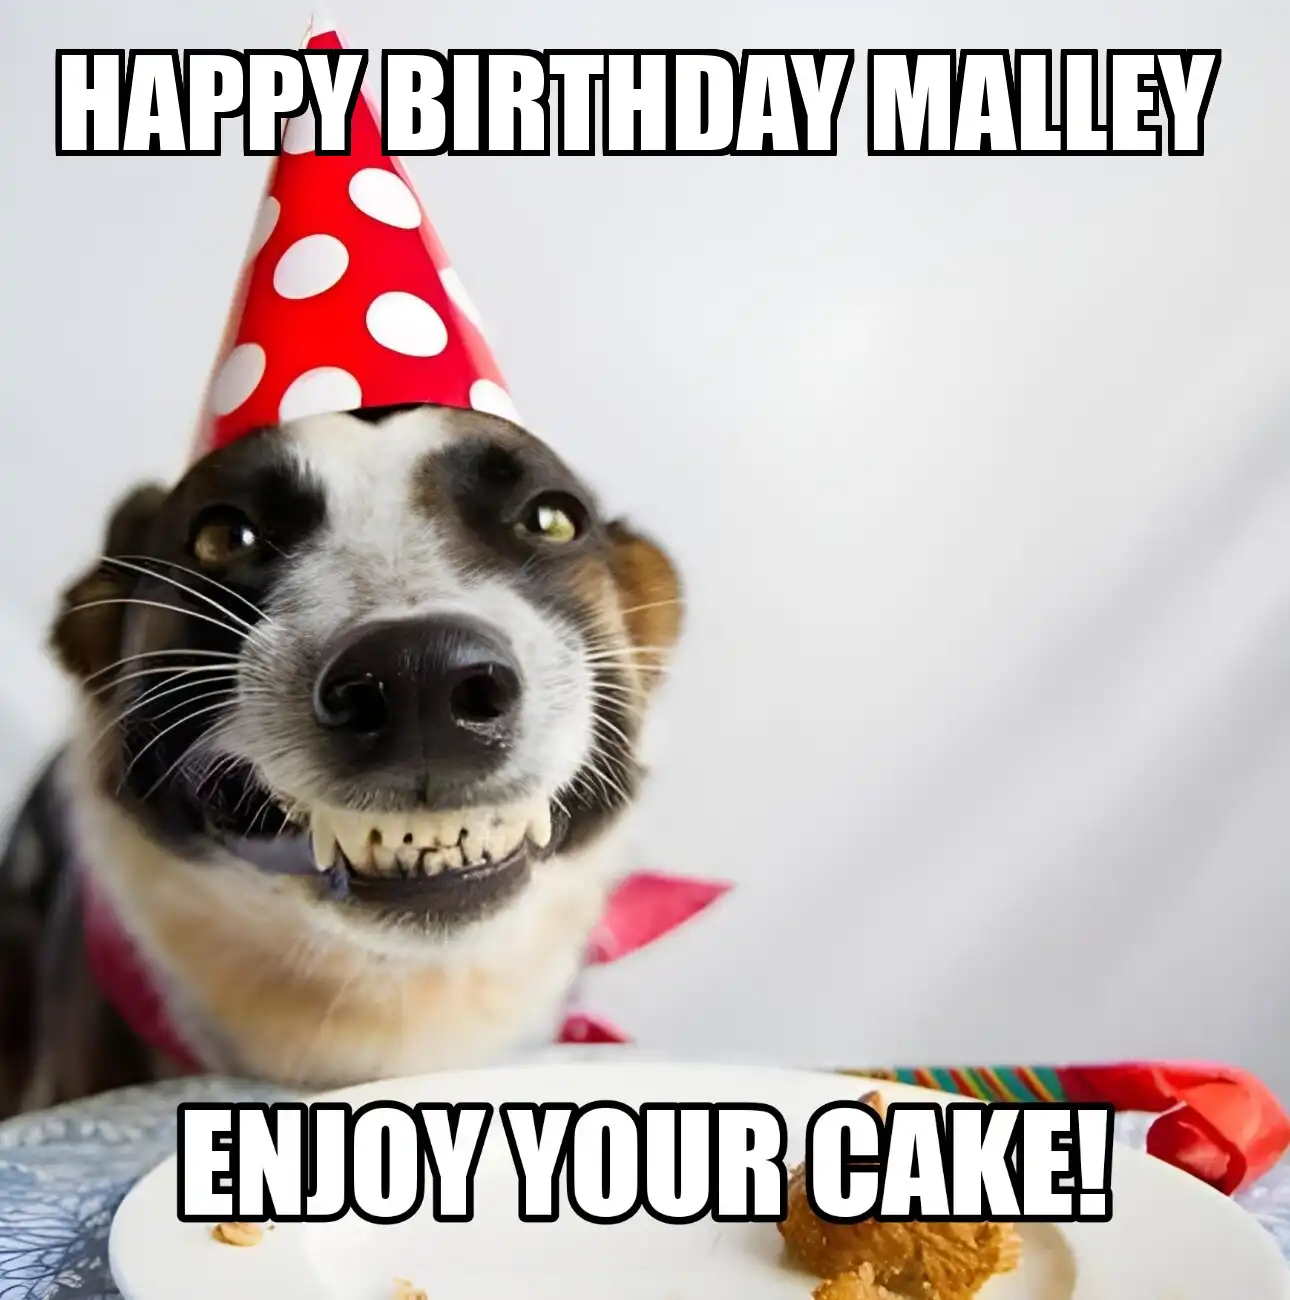 Happy Birthday Malley Enjoy Your Cake Dog Meme